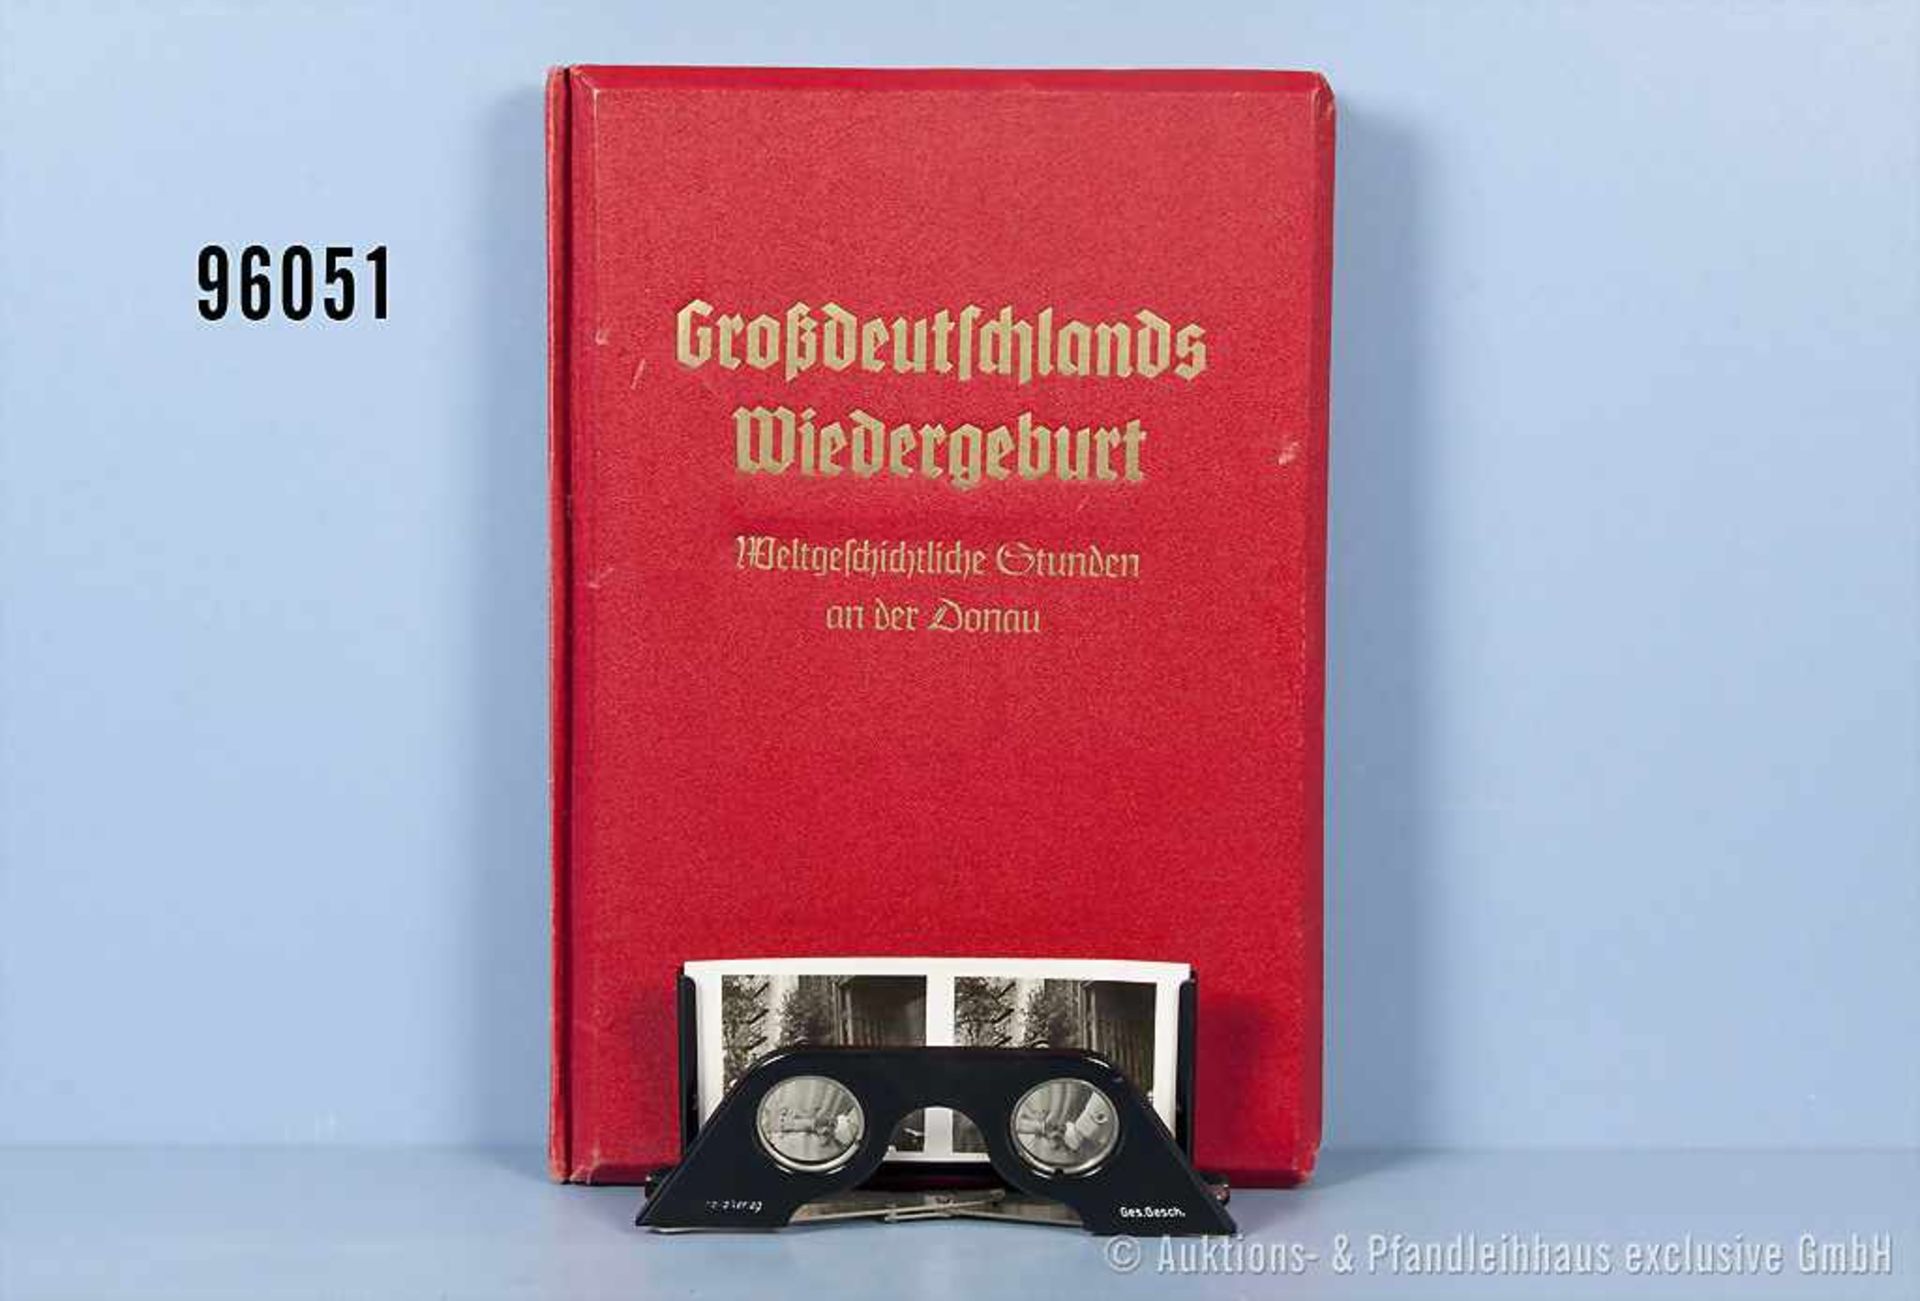 Raumbildalbum "Großdeutschlands Wiedergeburt - Weltgeschichtliche Stunden an der Donau", n. A. d. E.